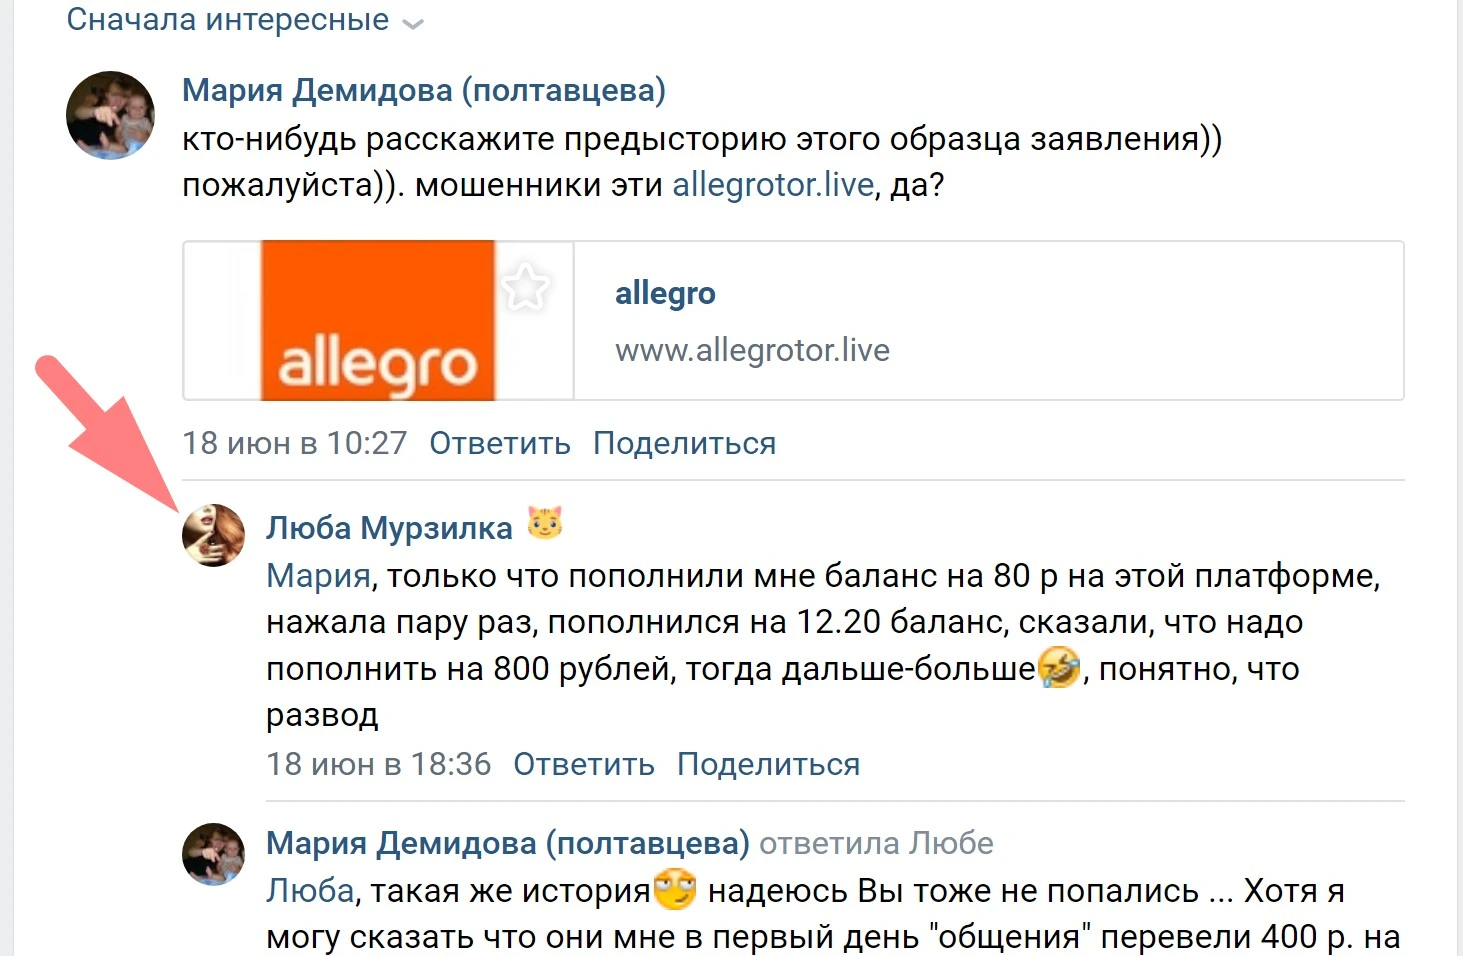 Информация от пострадавшего от платформы Allegrotor.live